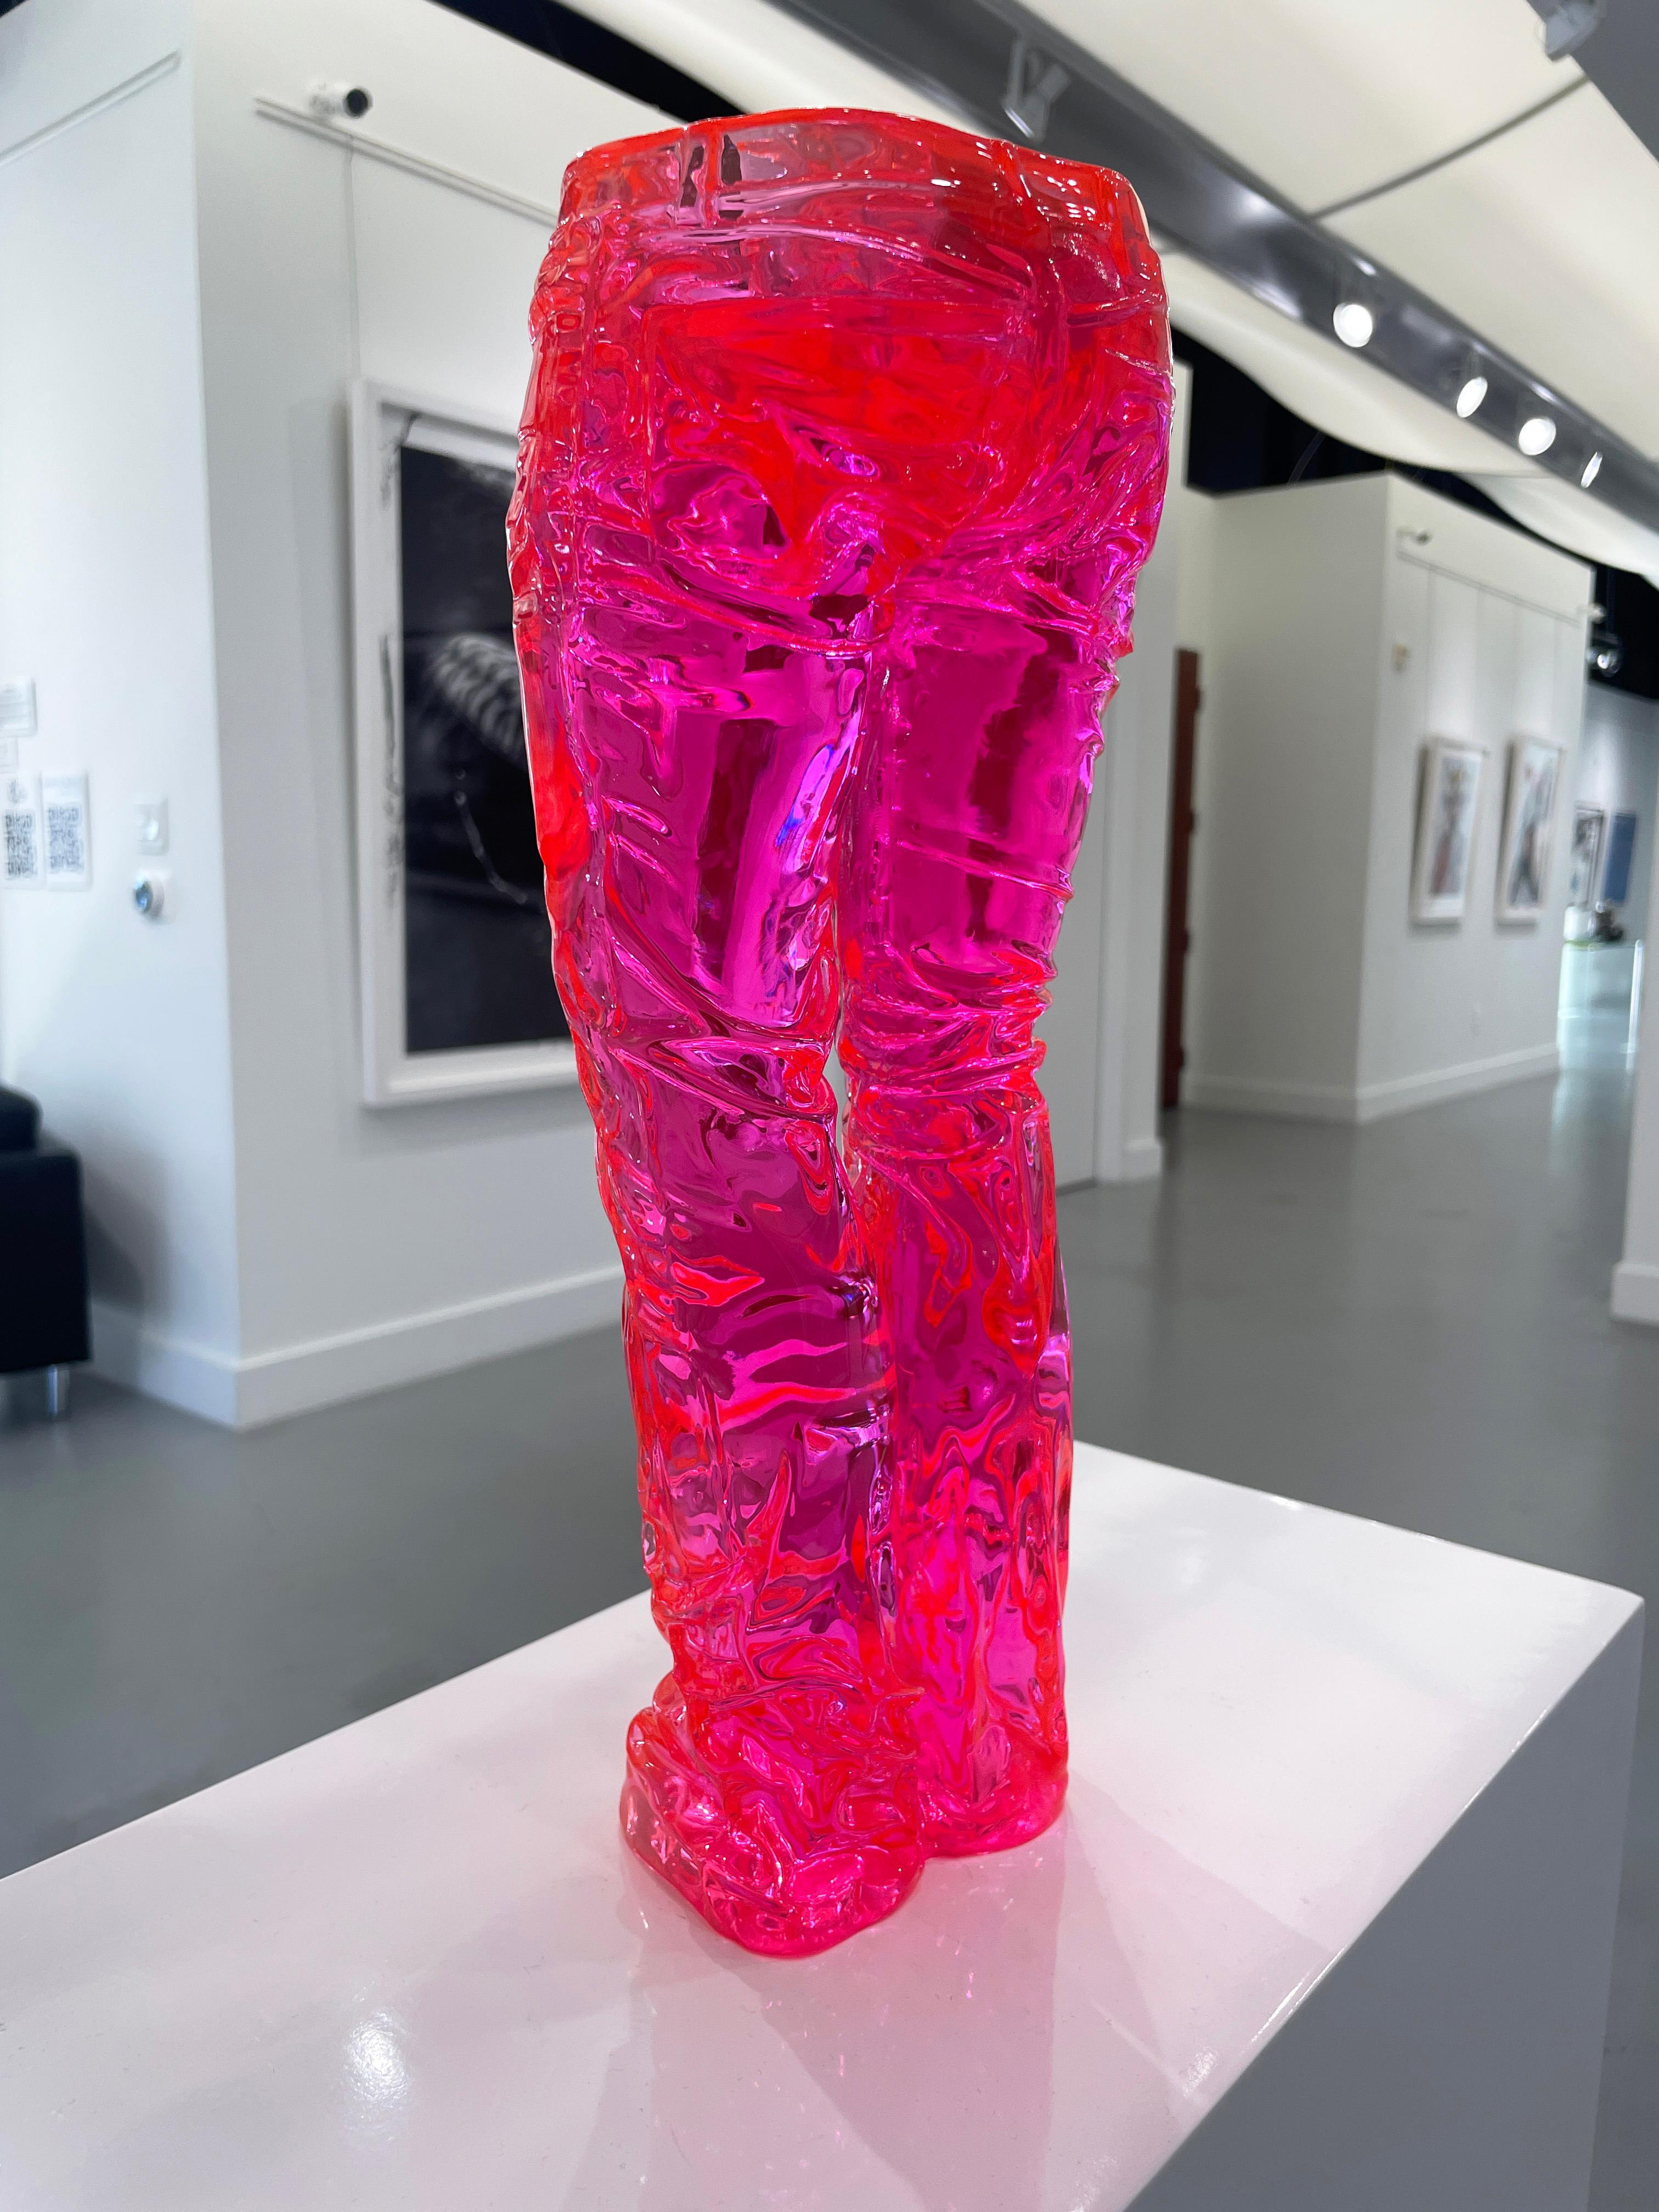 Wild Denim Kristall Klarrosa Kristall (Pop-Art), Sculpture, von Richard Orlinski